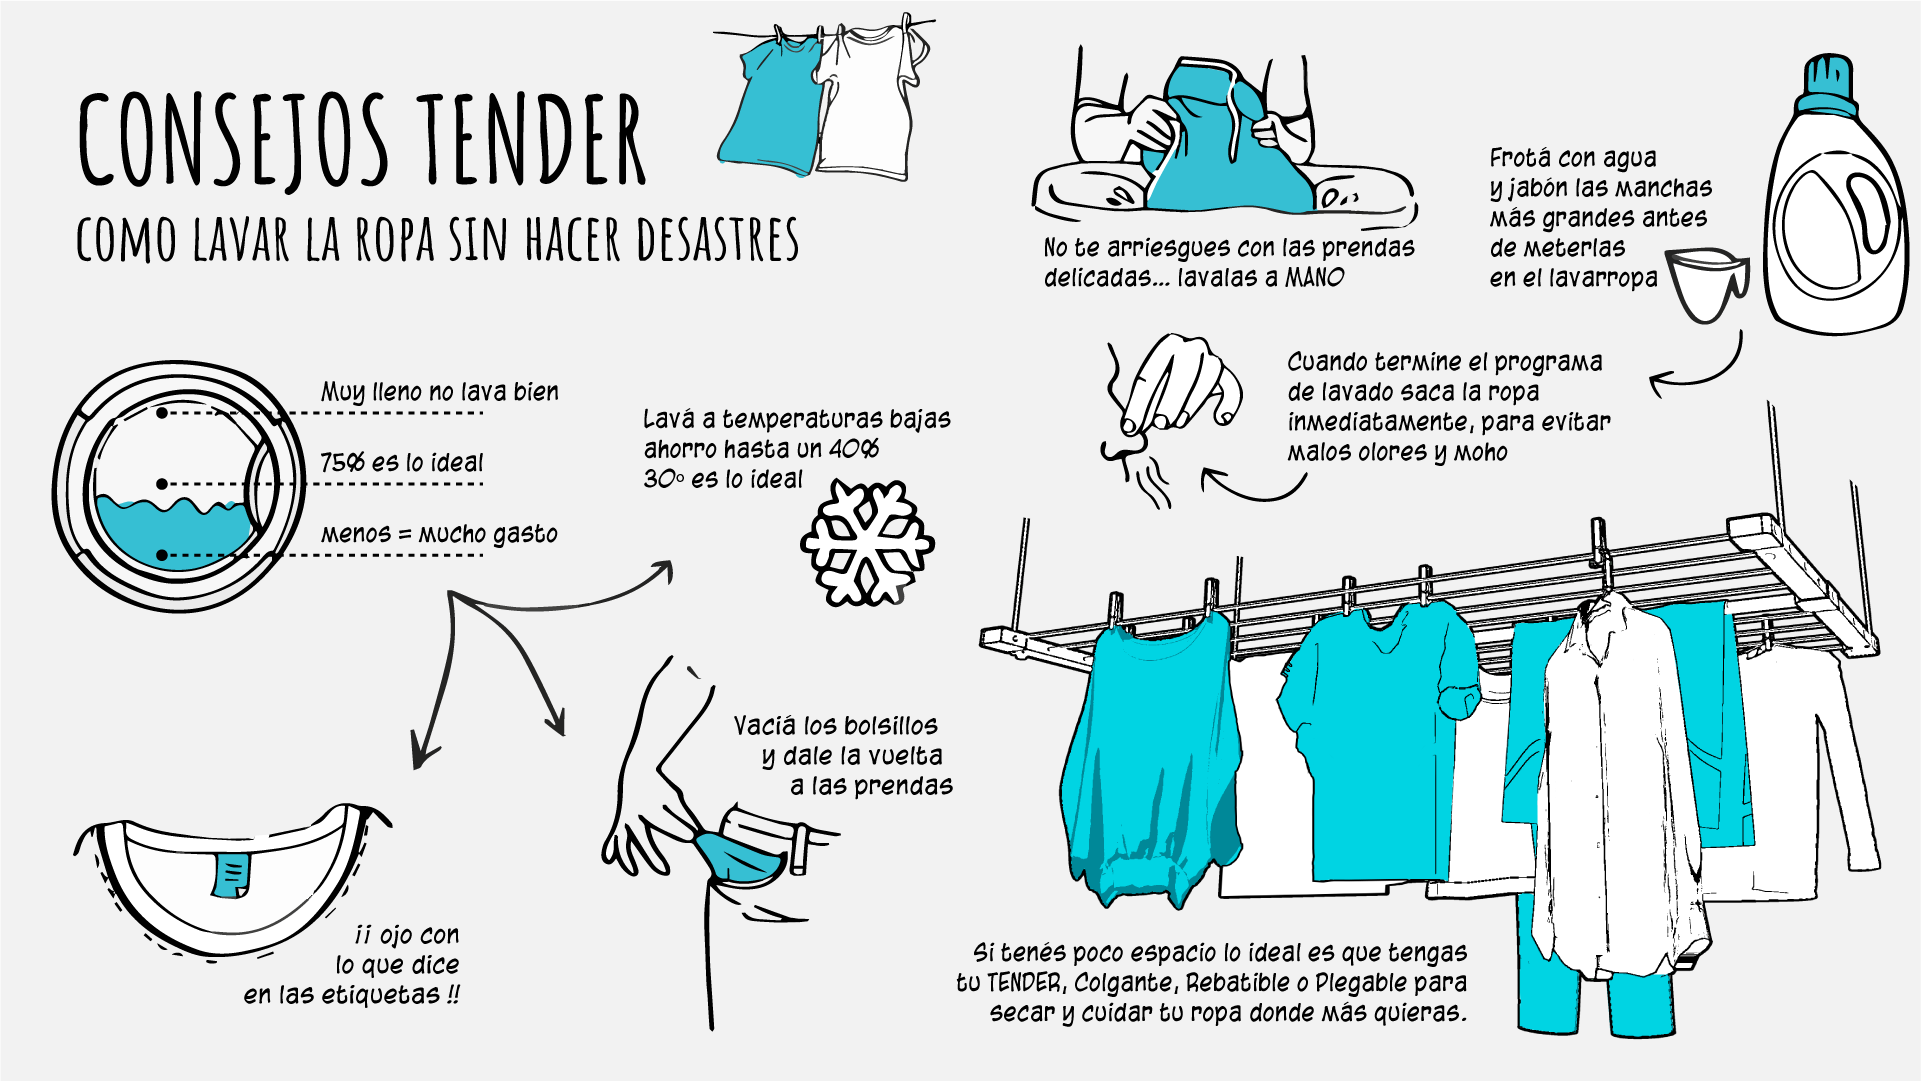 Cómo lavar la ropa y accesorios de verano - Foto 1